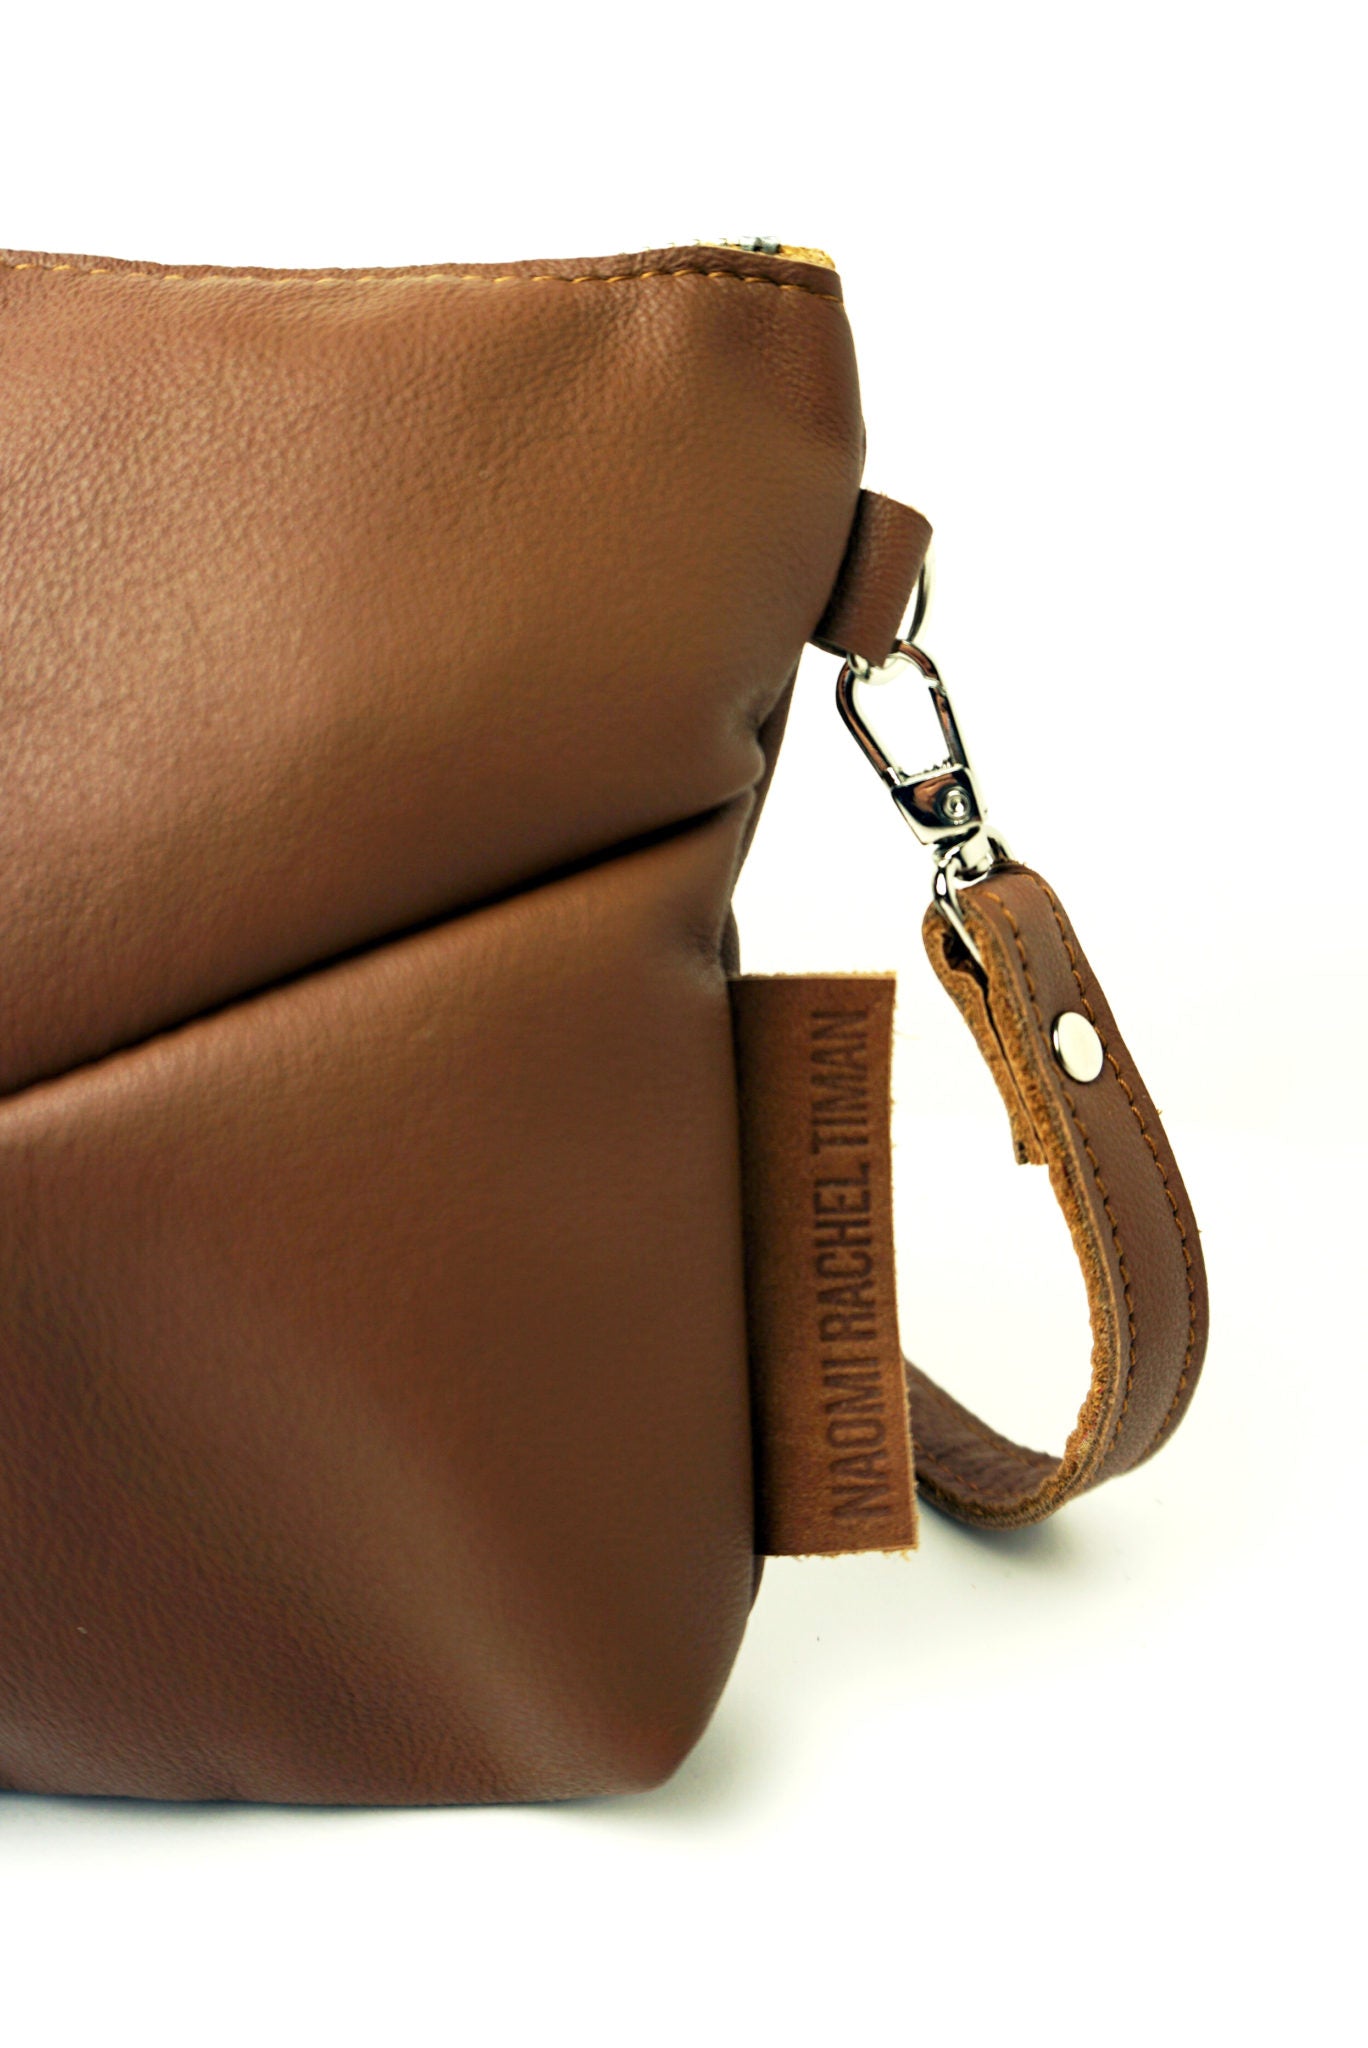 Duurzame Mode | Naomi Rachèl Timan Small Bag Cognac